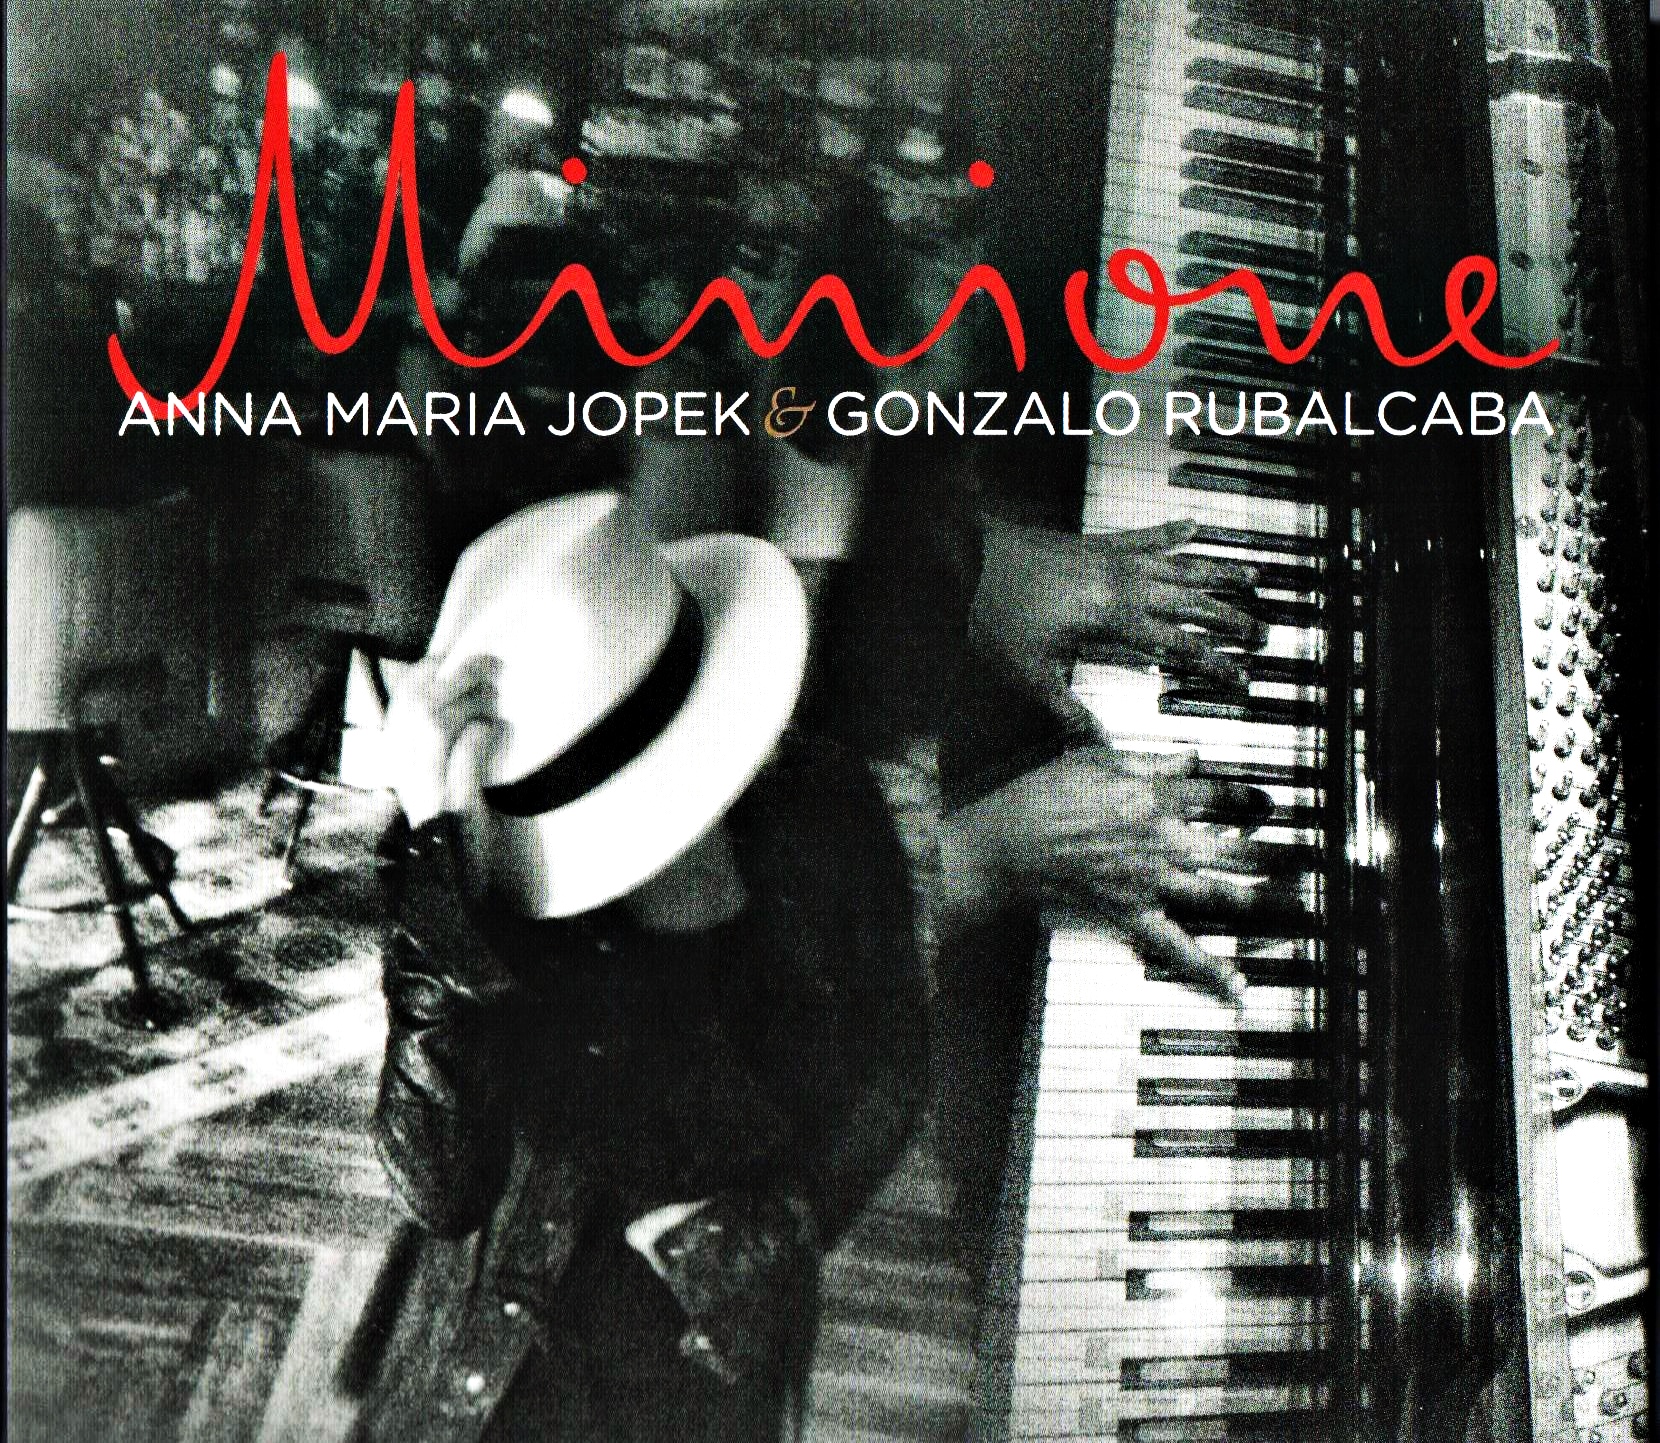 Anna Maria JOPEK, cette voix chaude qui nous vient de la Pologne, et qui enchante la planète jazz.